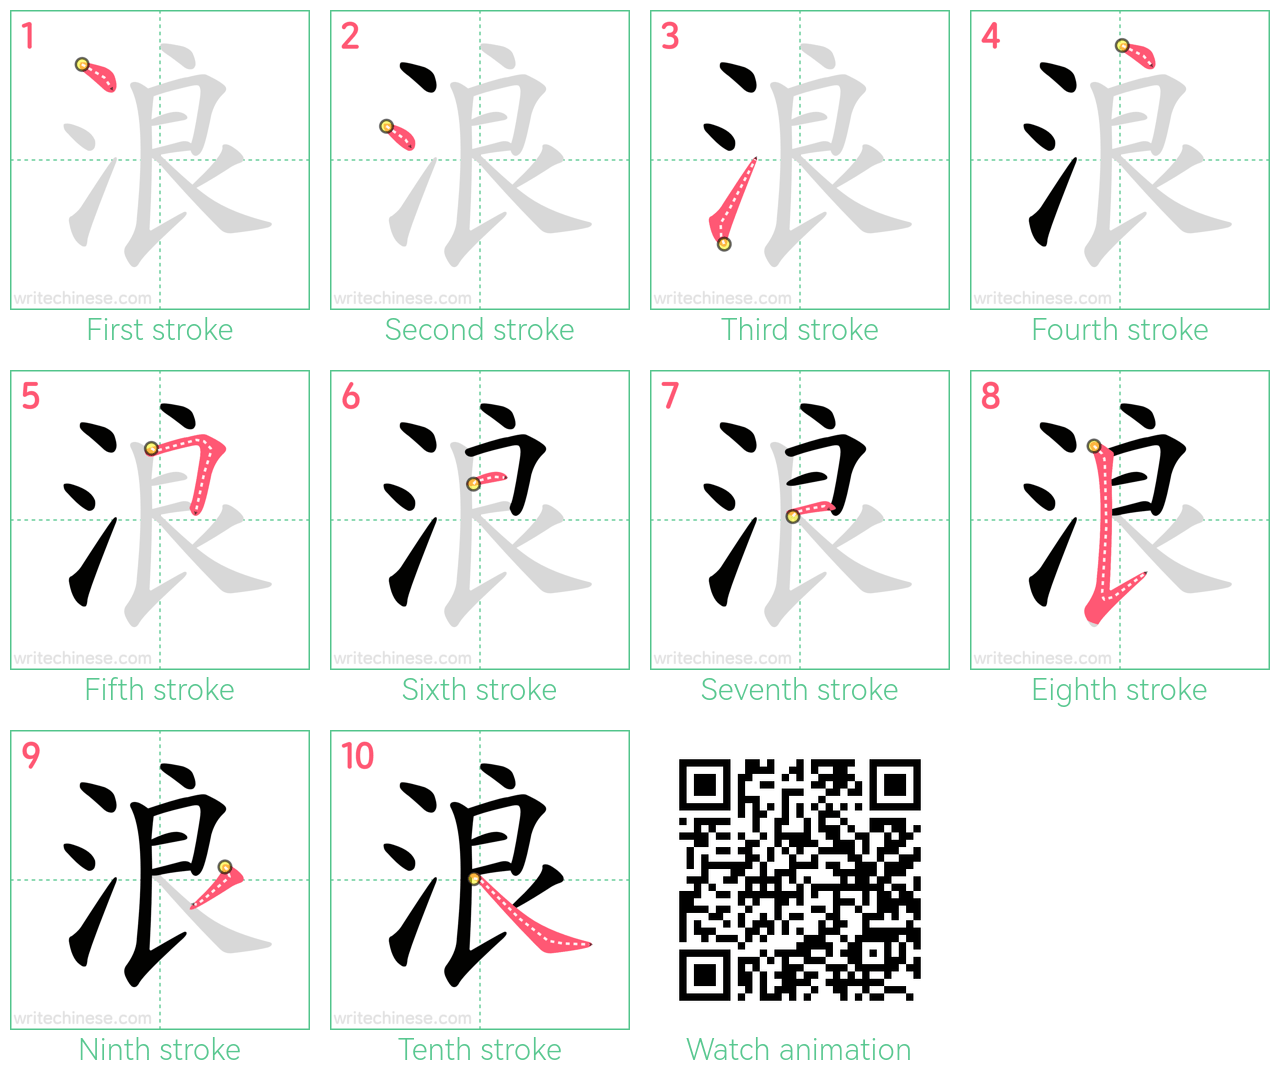 浪 step-by-step stroke order diagrams